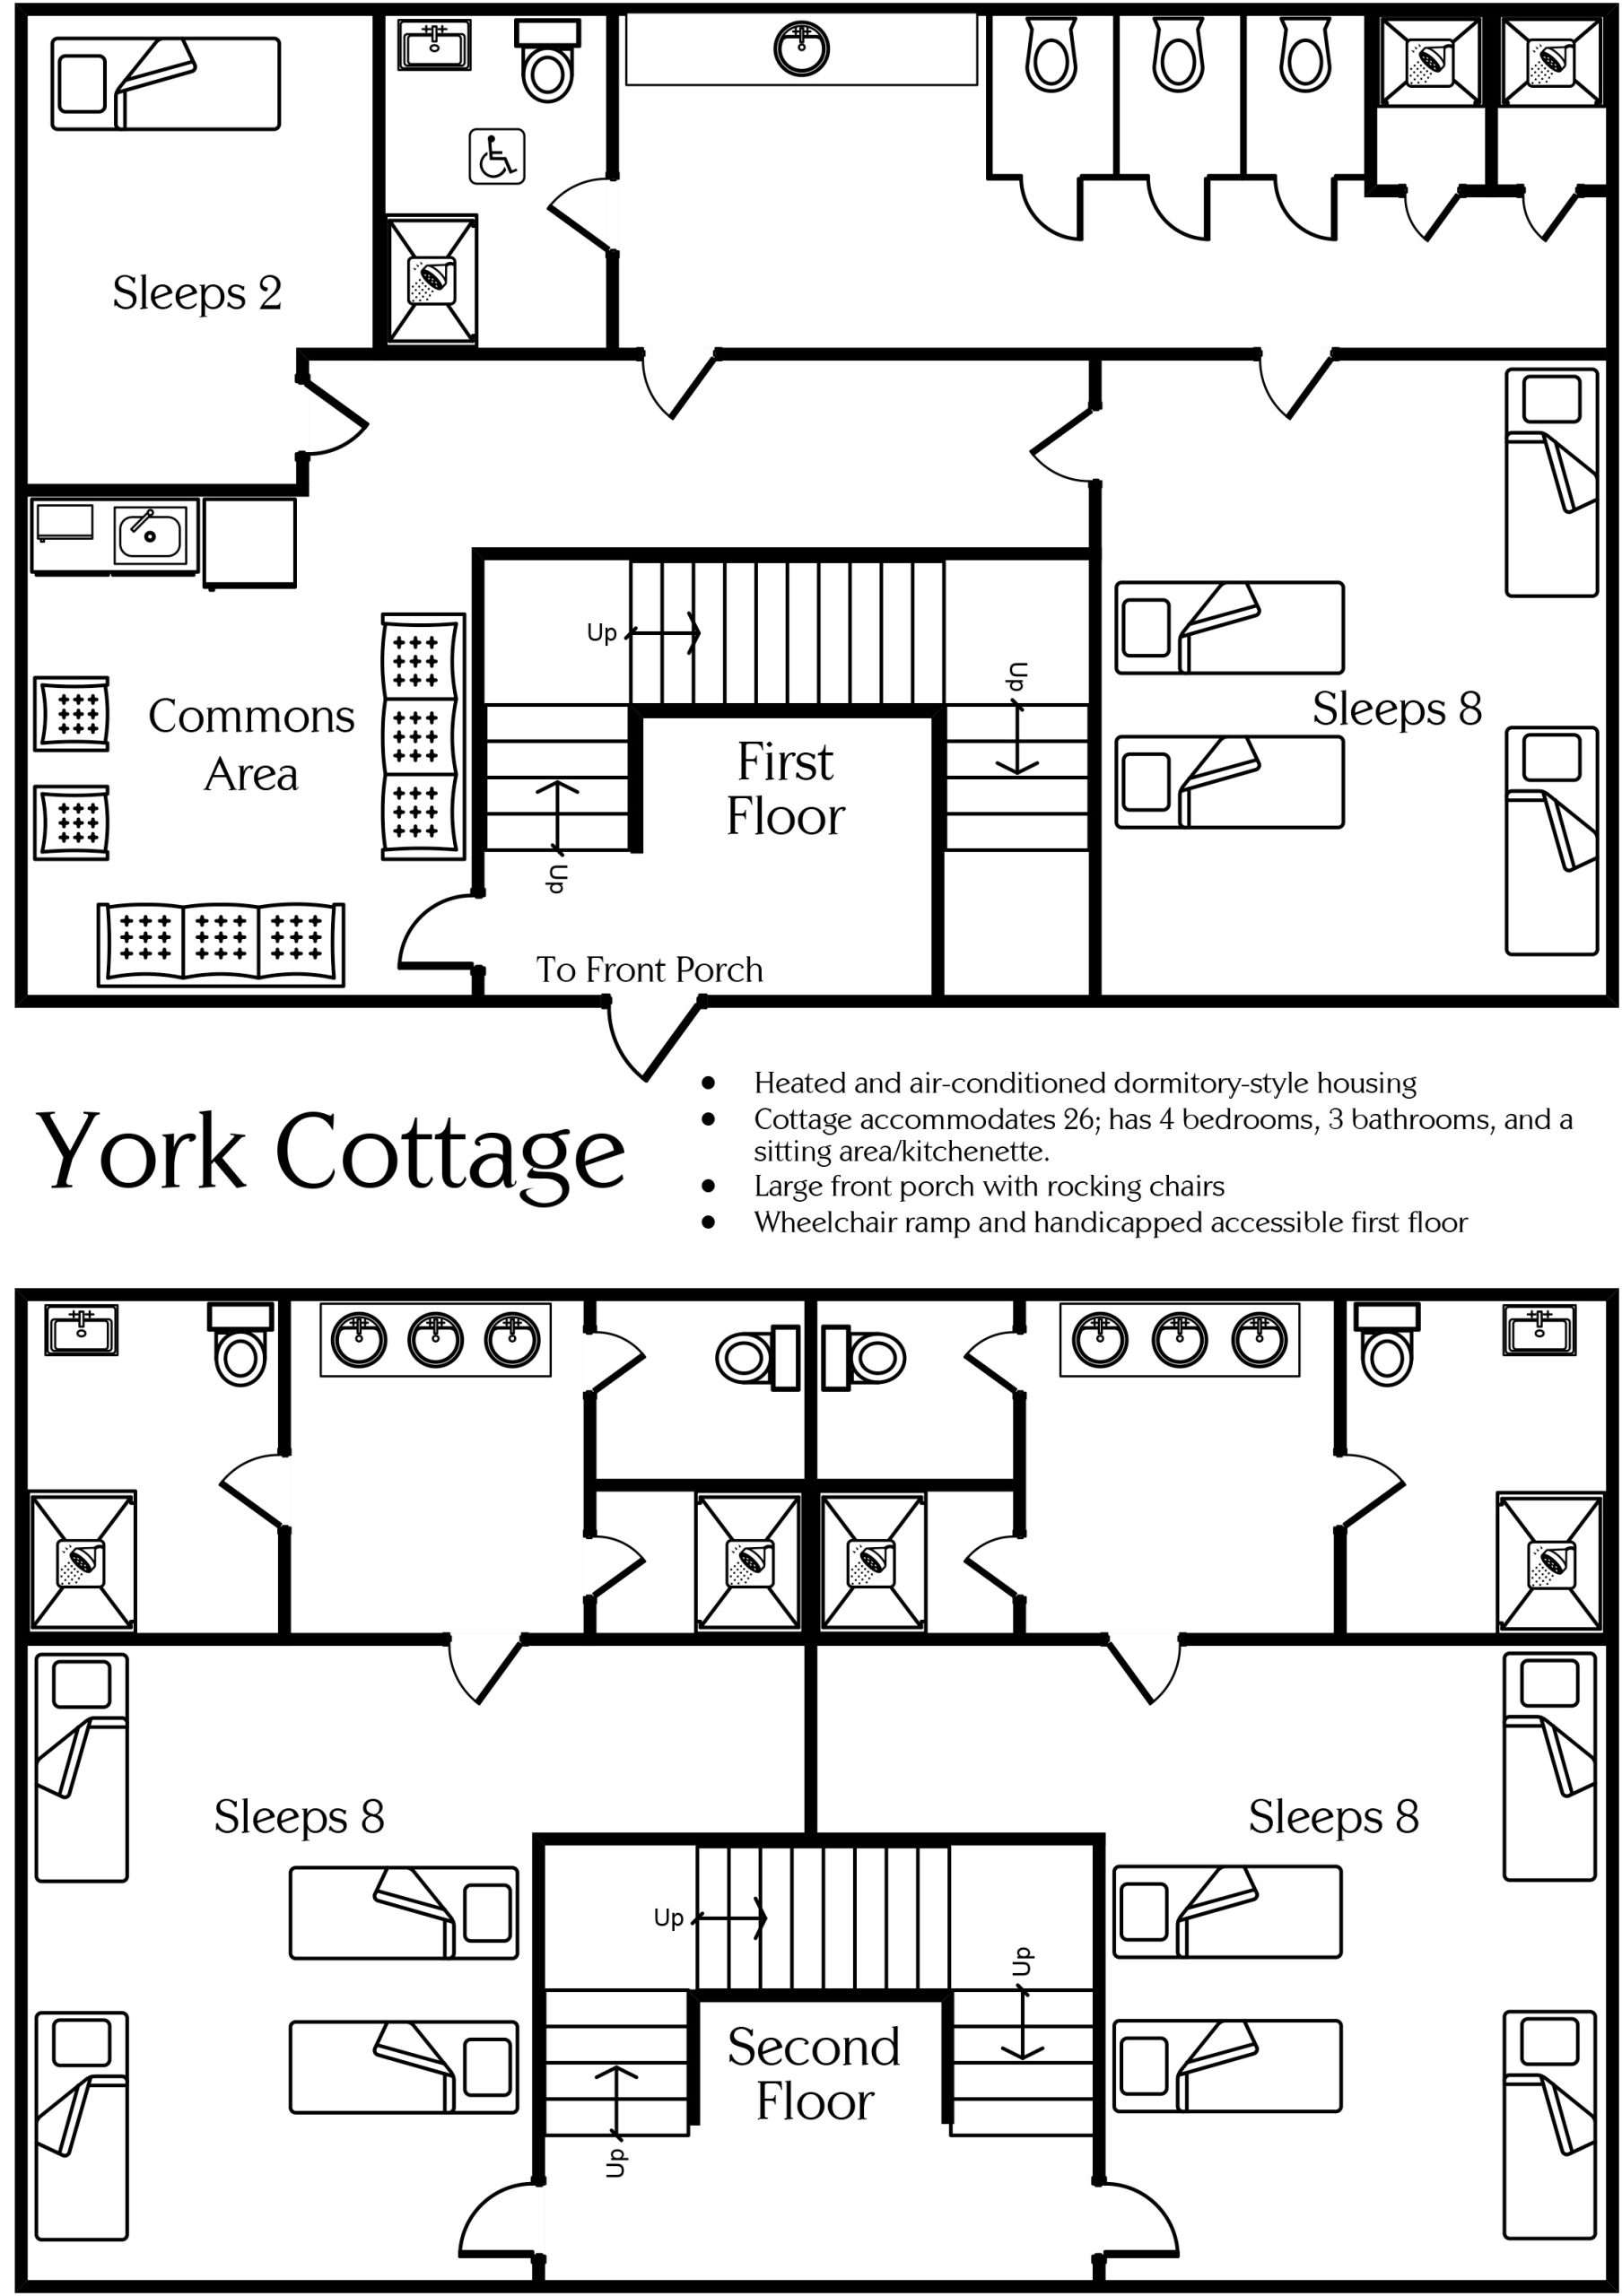 York Cottage floor plan